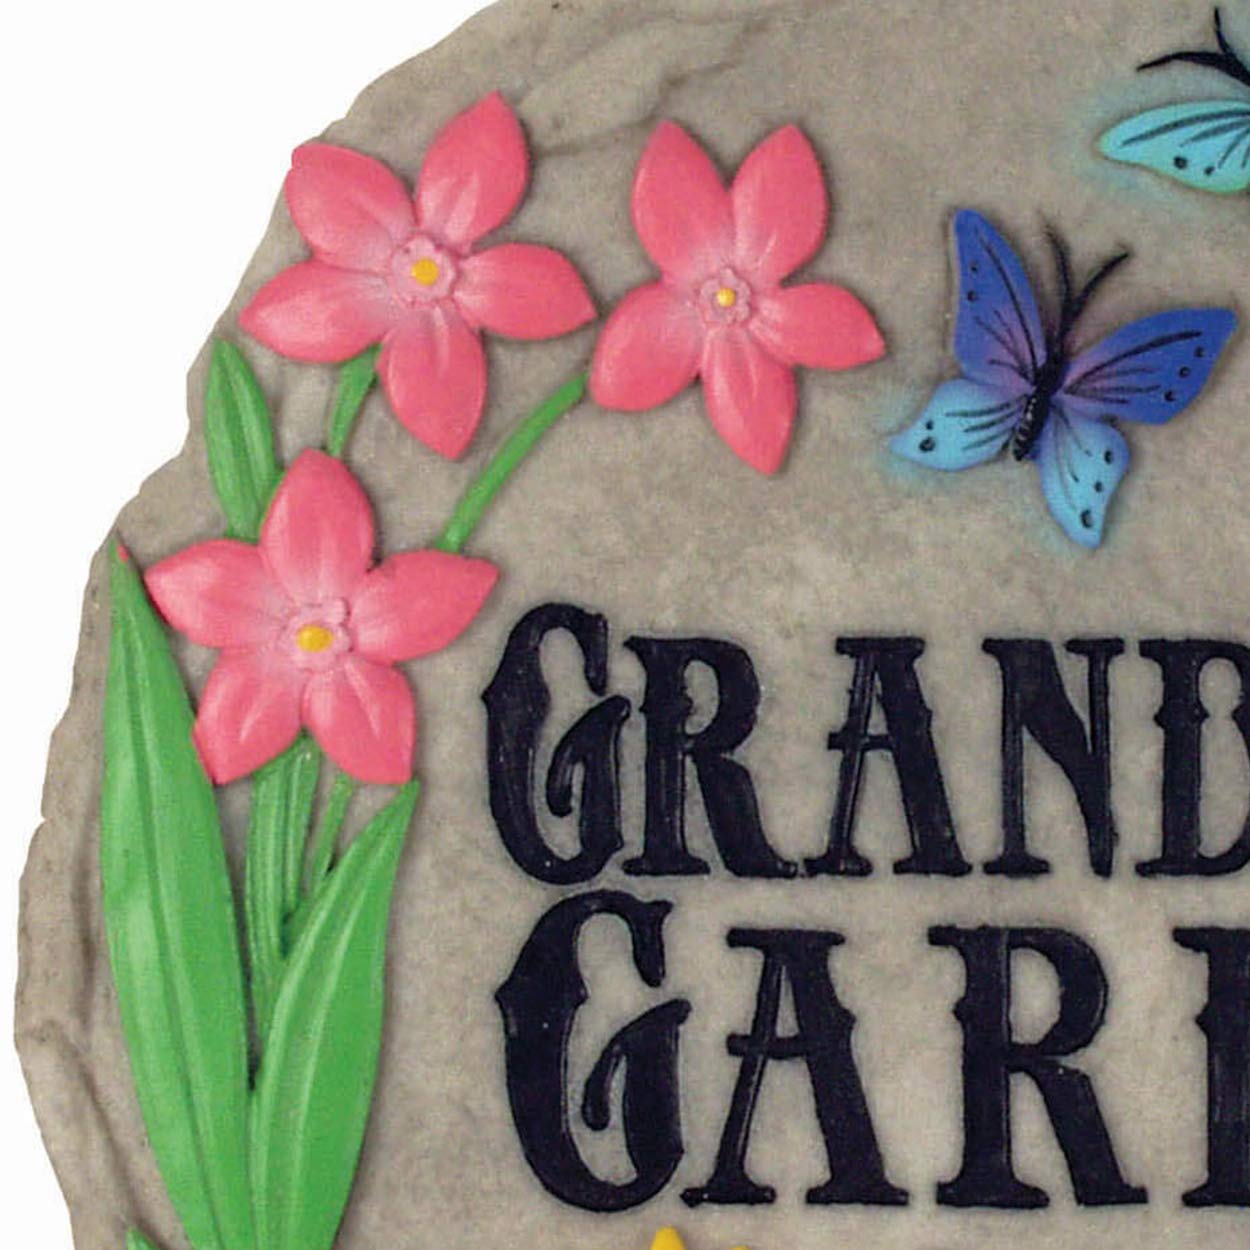 Spoontiques - Garden Décor - Grandma’s Garden Stepping Stone - Decorative Stone for Garden